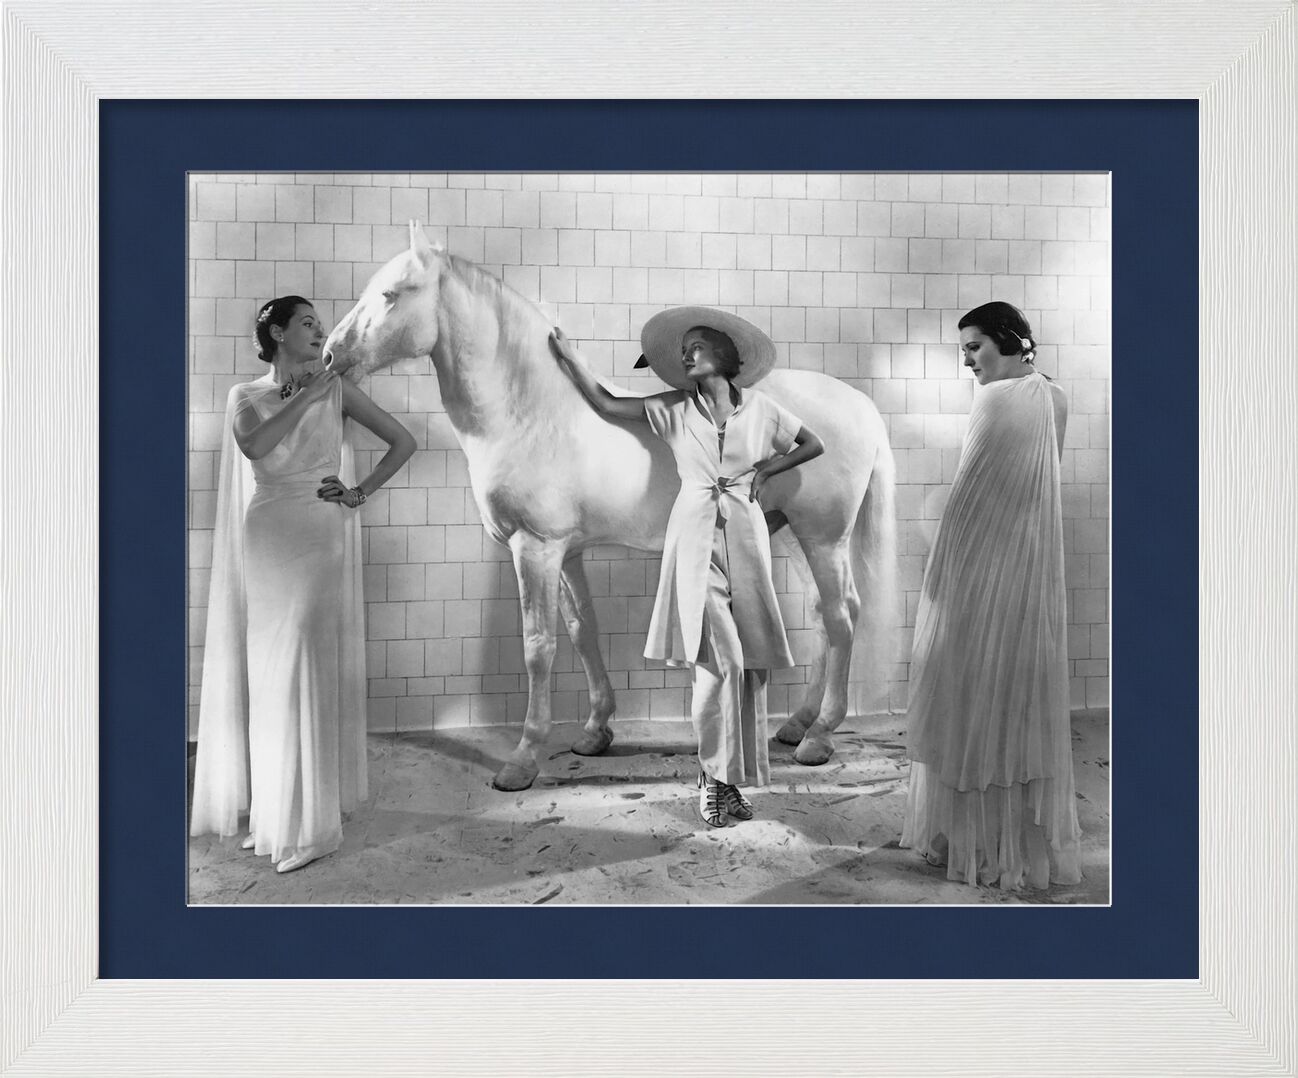 Vogue, Janvier 1936 - Edward Steichen de AUX BEAUX-ARTS, Prodi Art, Edward Steichen, femmes, cheval, mode, chapeau, robe